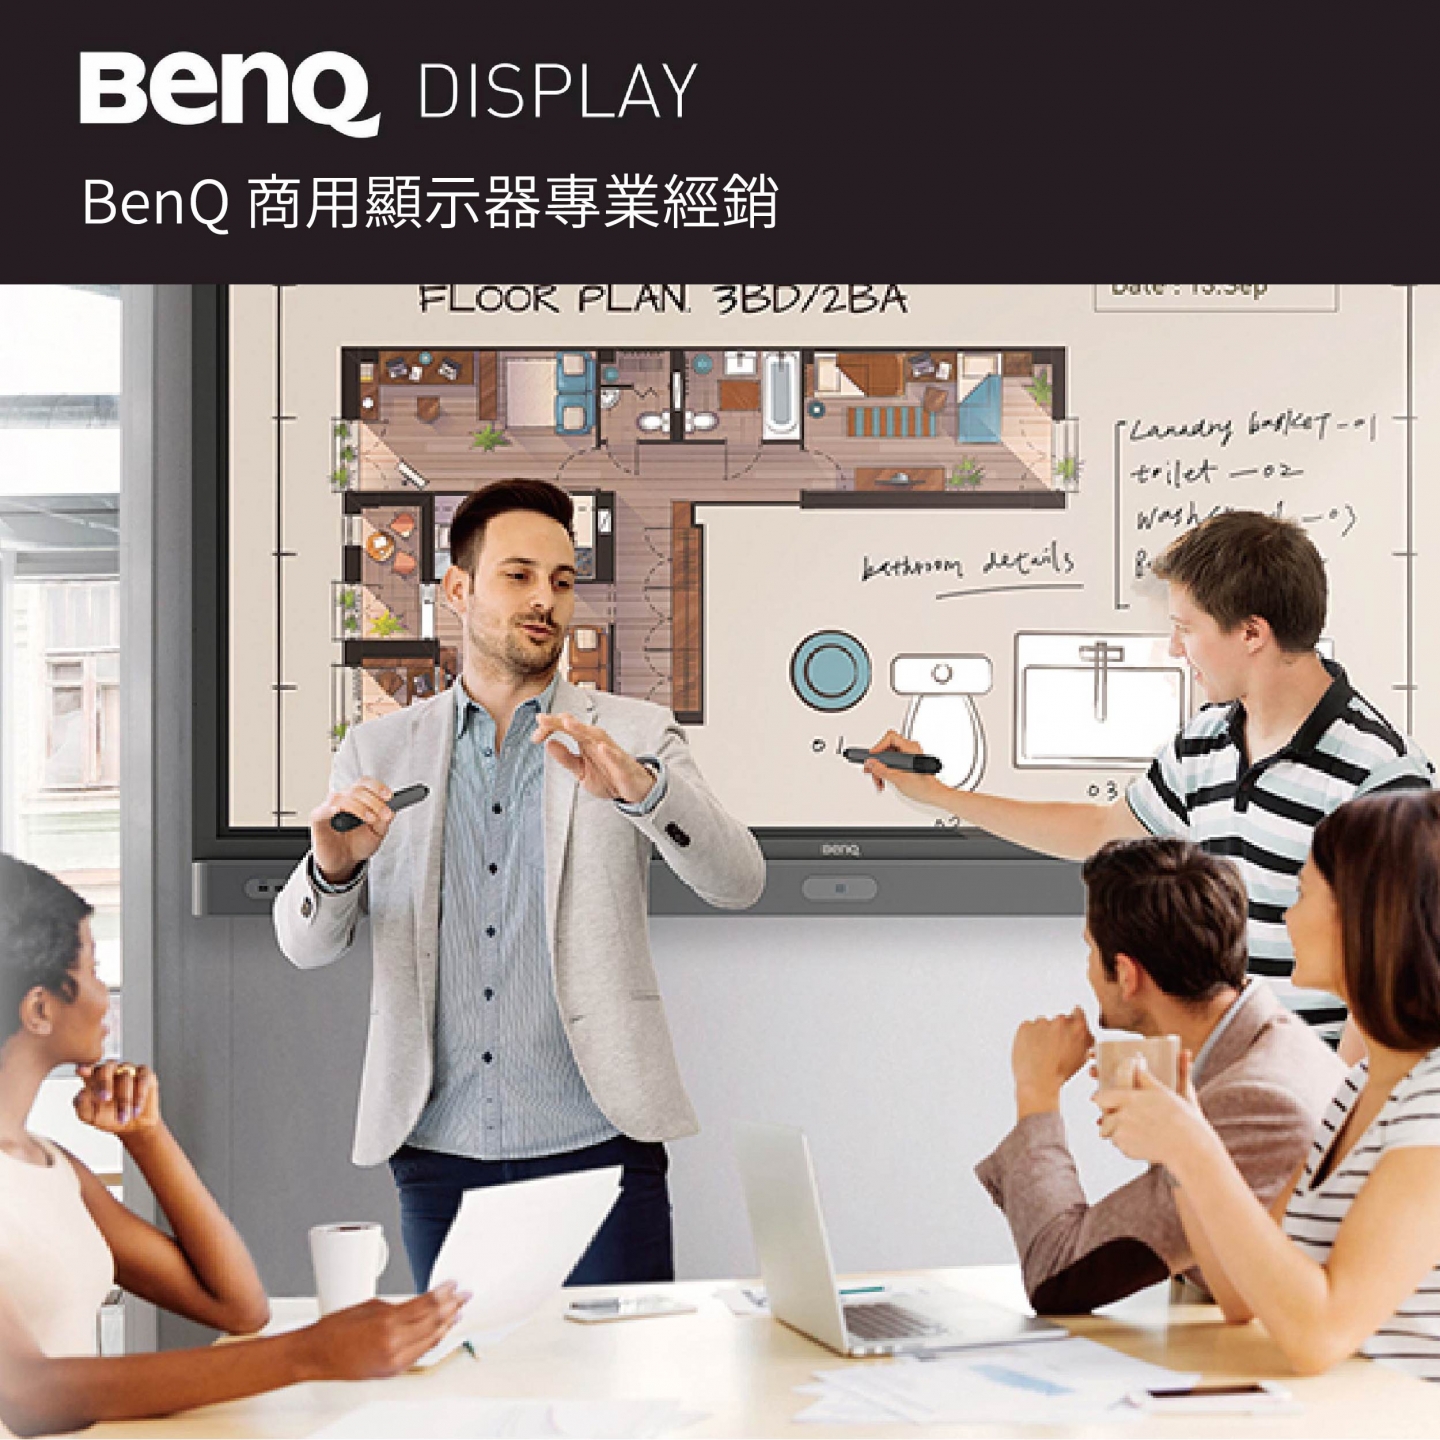 BenQ 商用顯示器